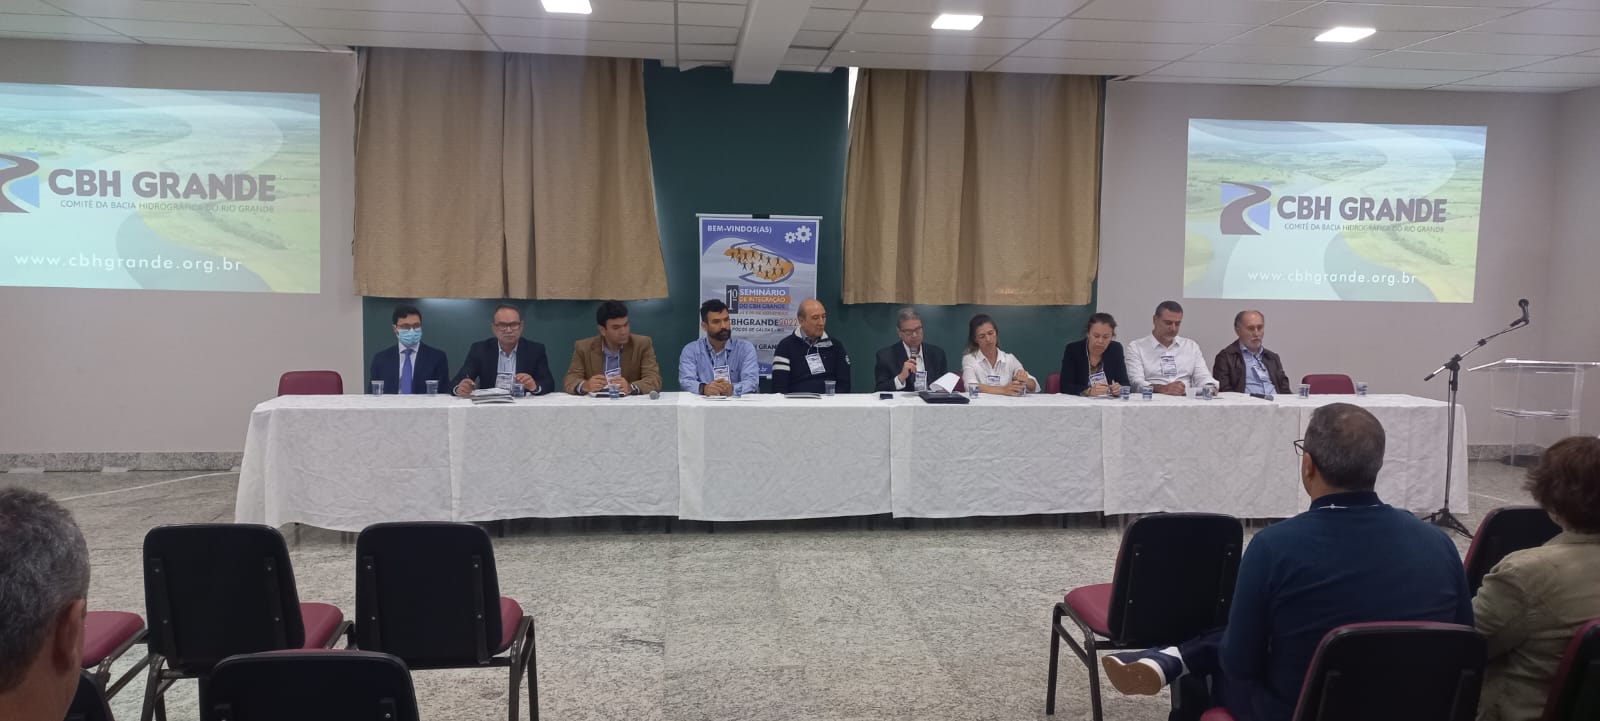 Membros do Comitê da Bacia Hidrográfica do Baixo Pardo/Grande participam de Seminário de Integração em Poços de Caldas